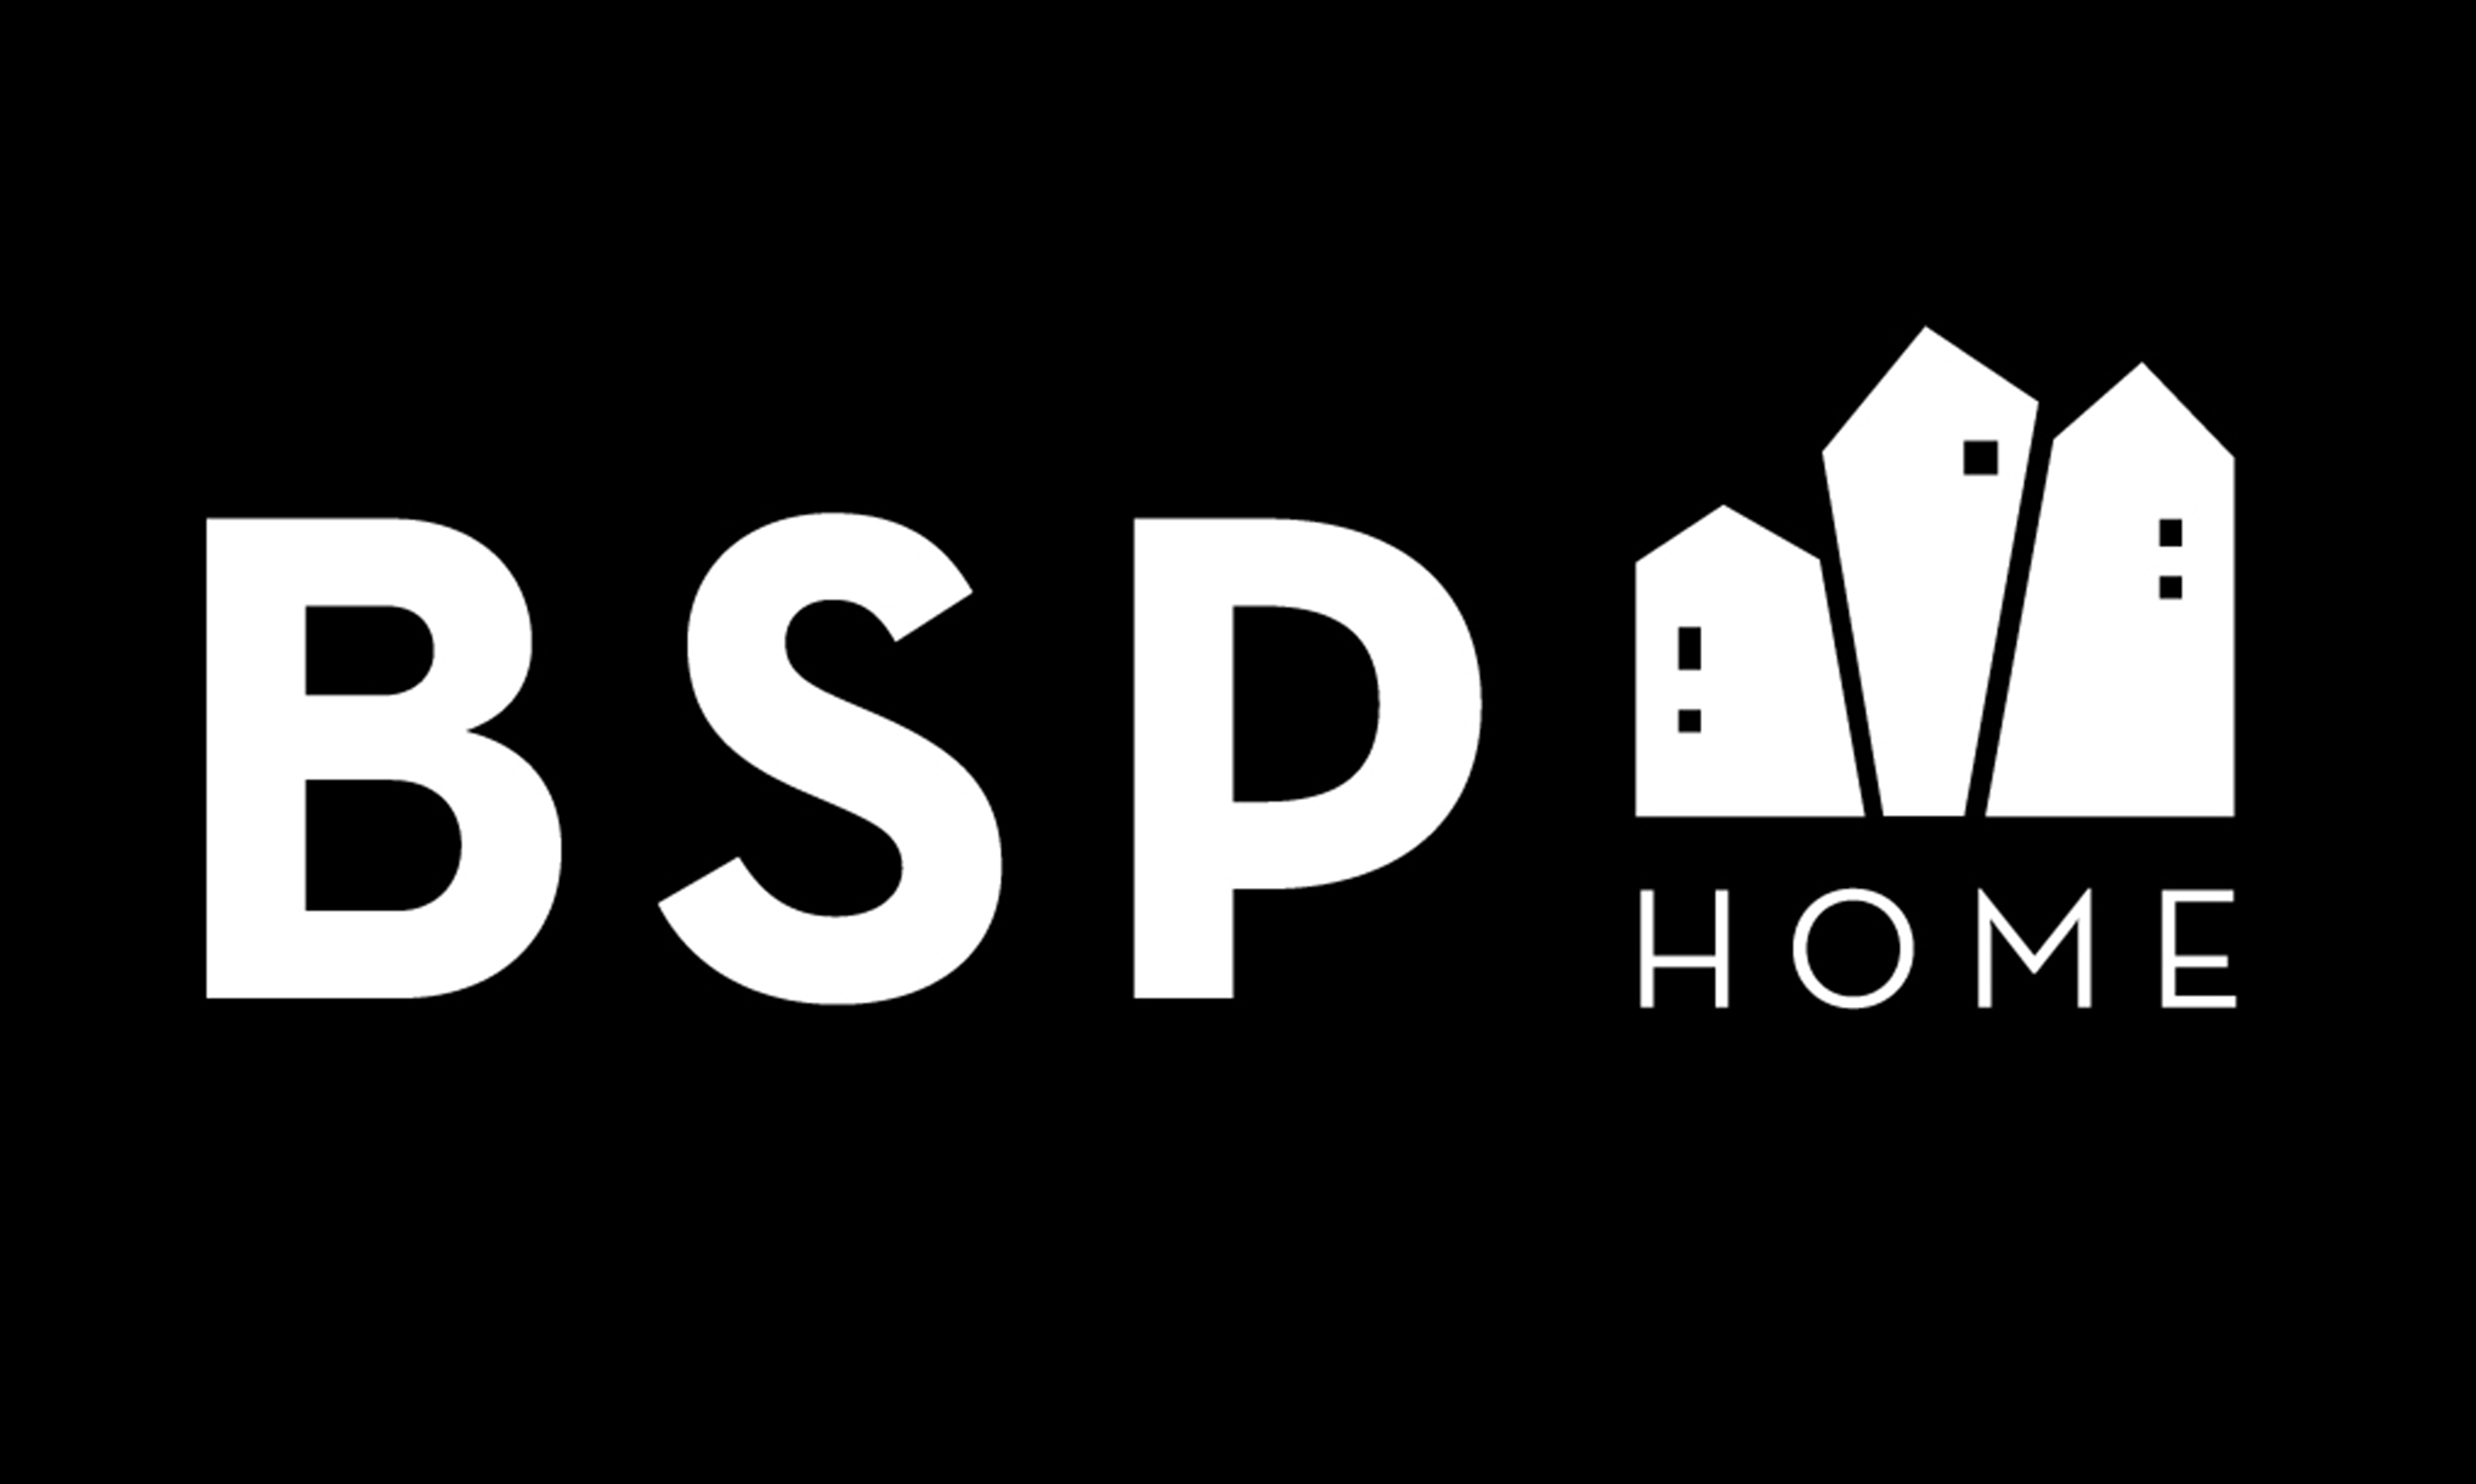 BSP HOME